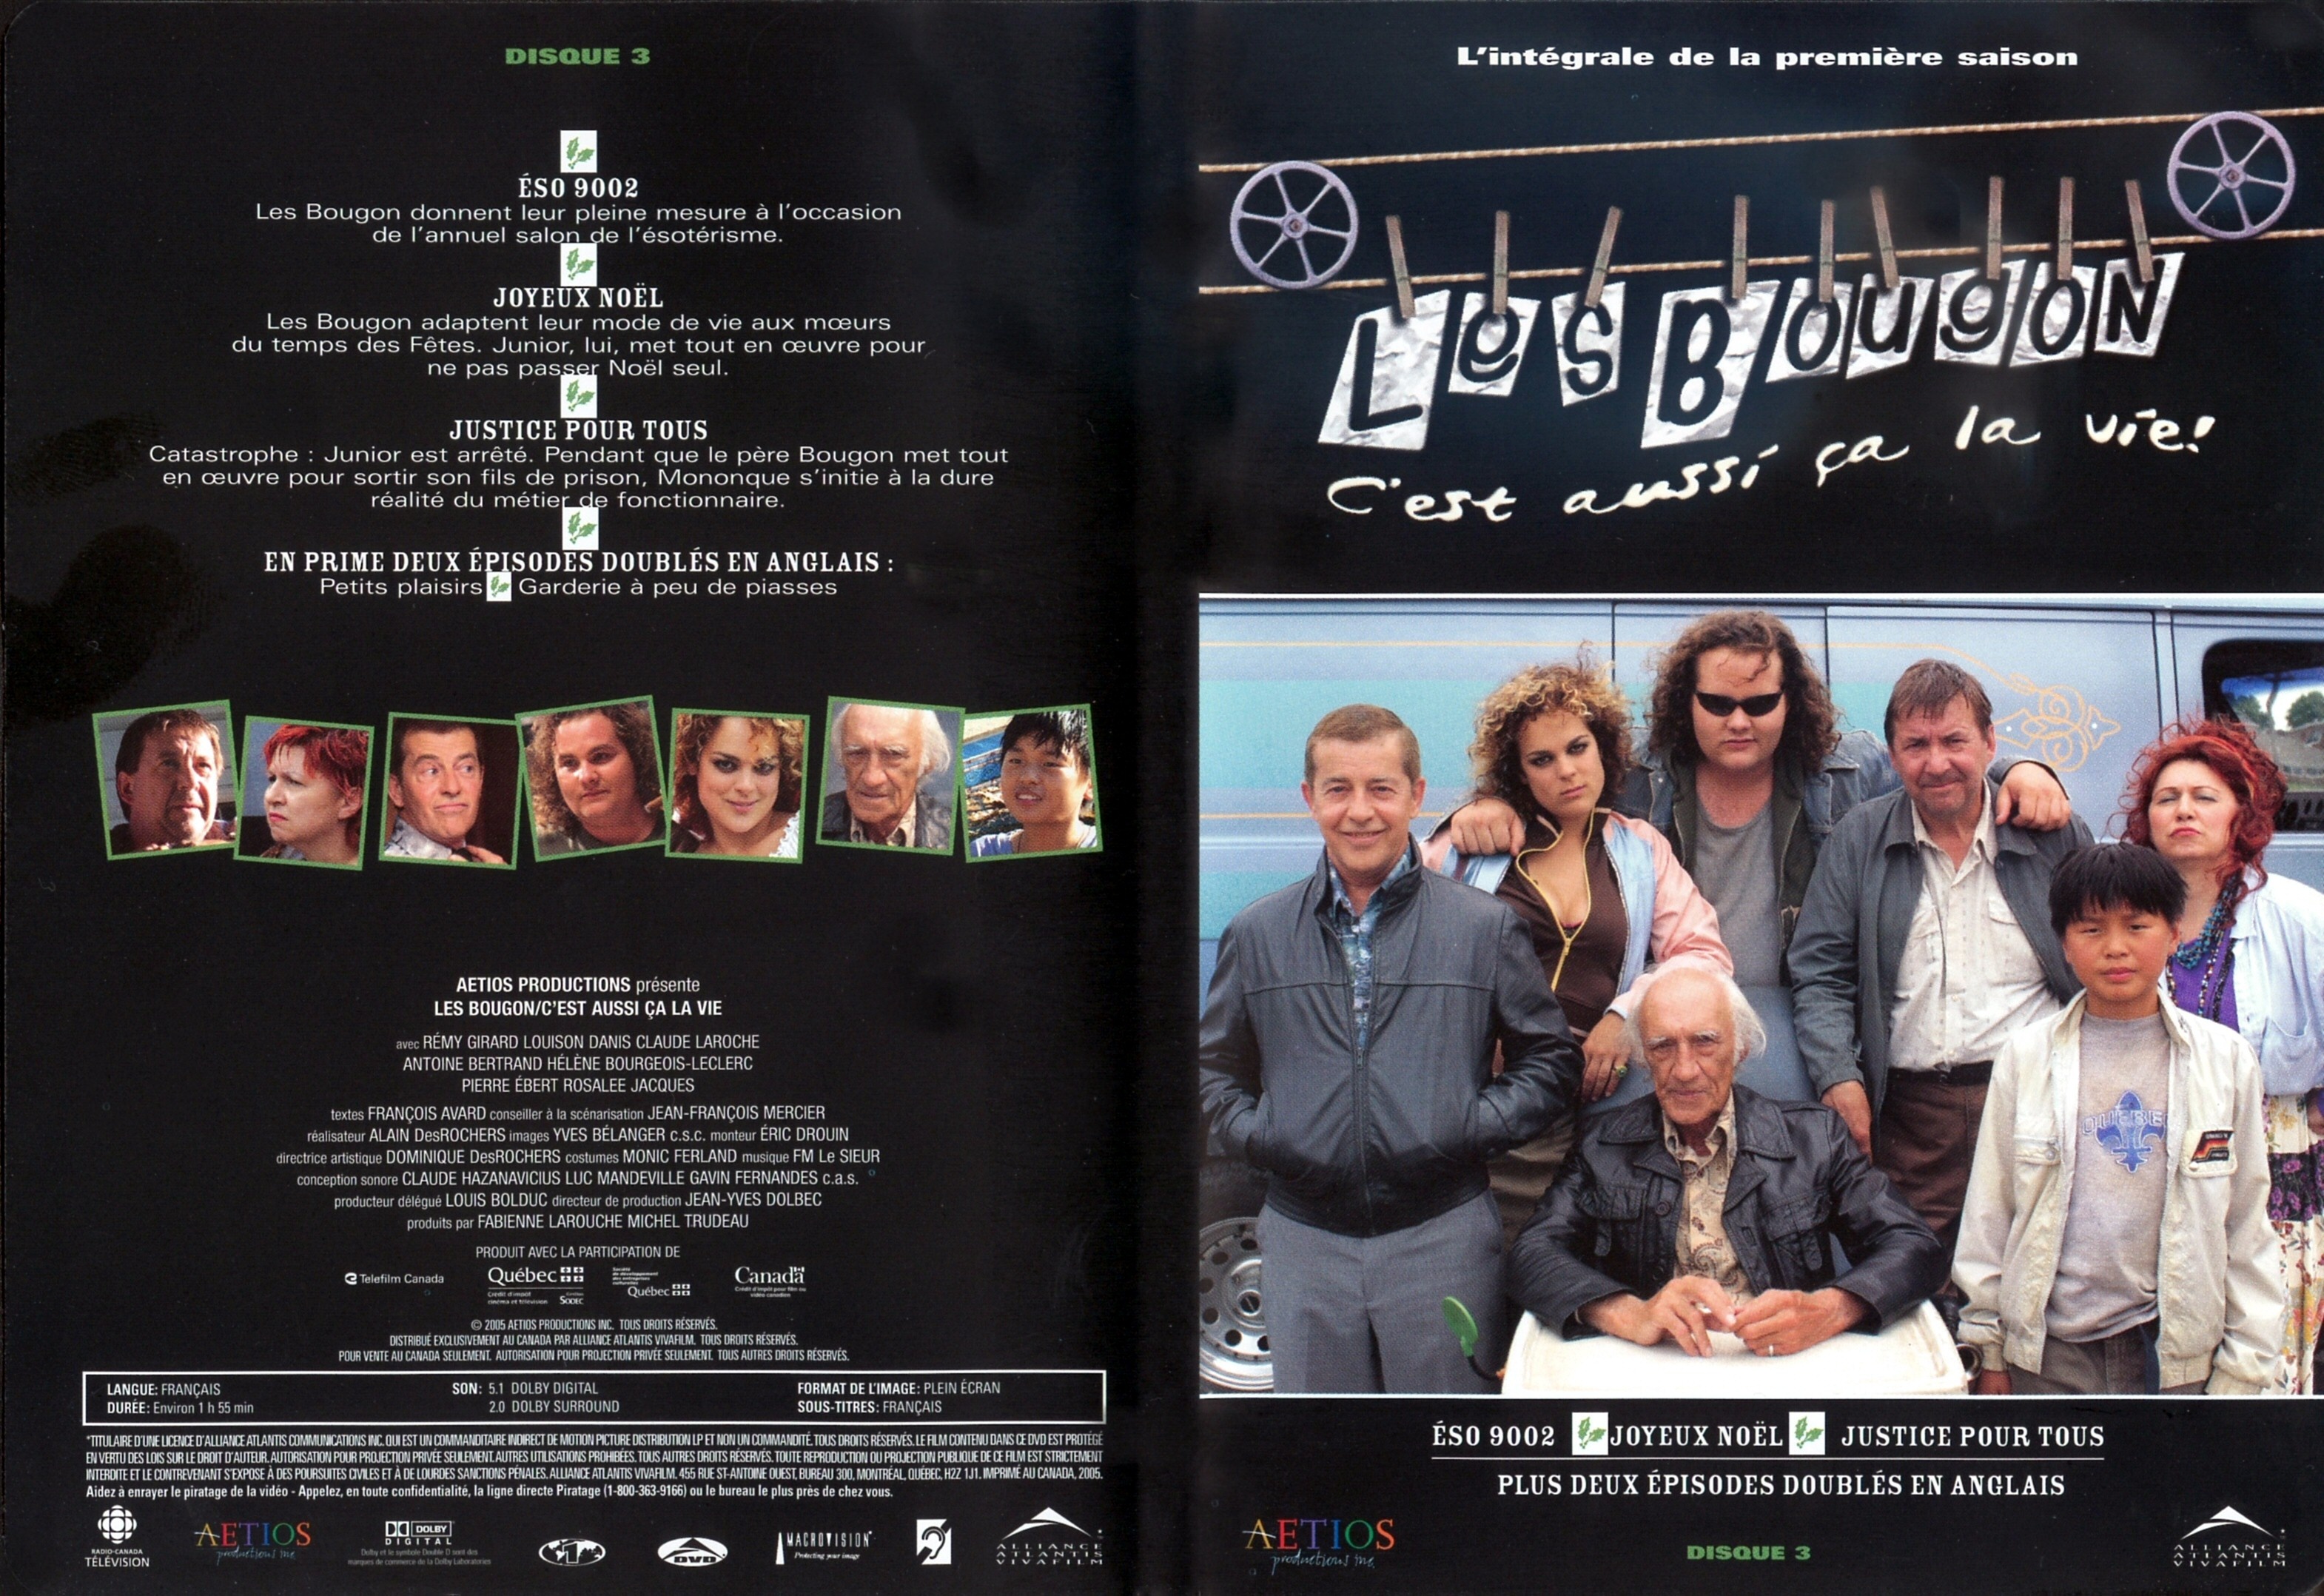 Jaquette DVD Les Bougon saison 1 DVD 3